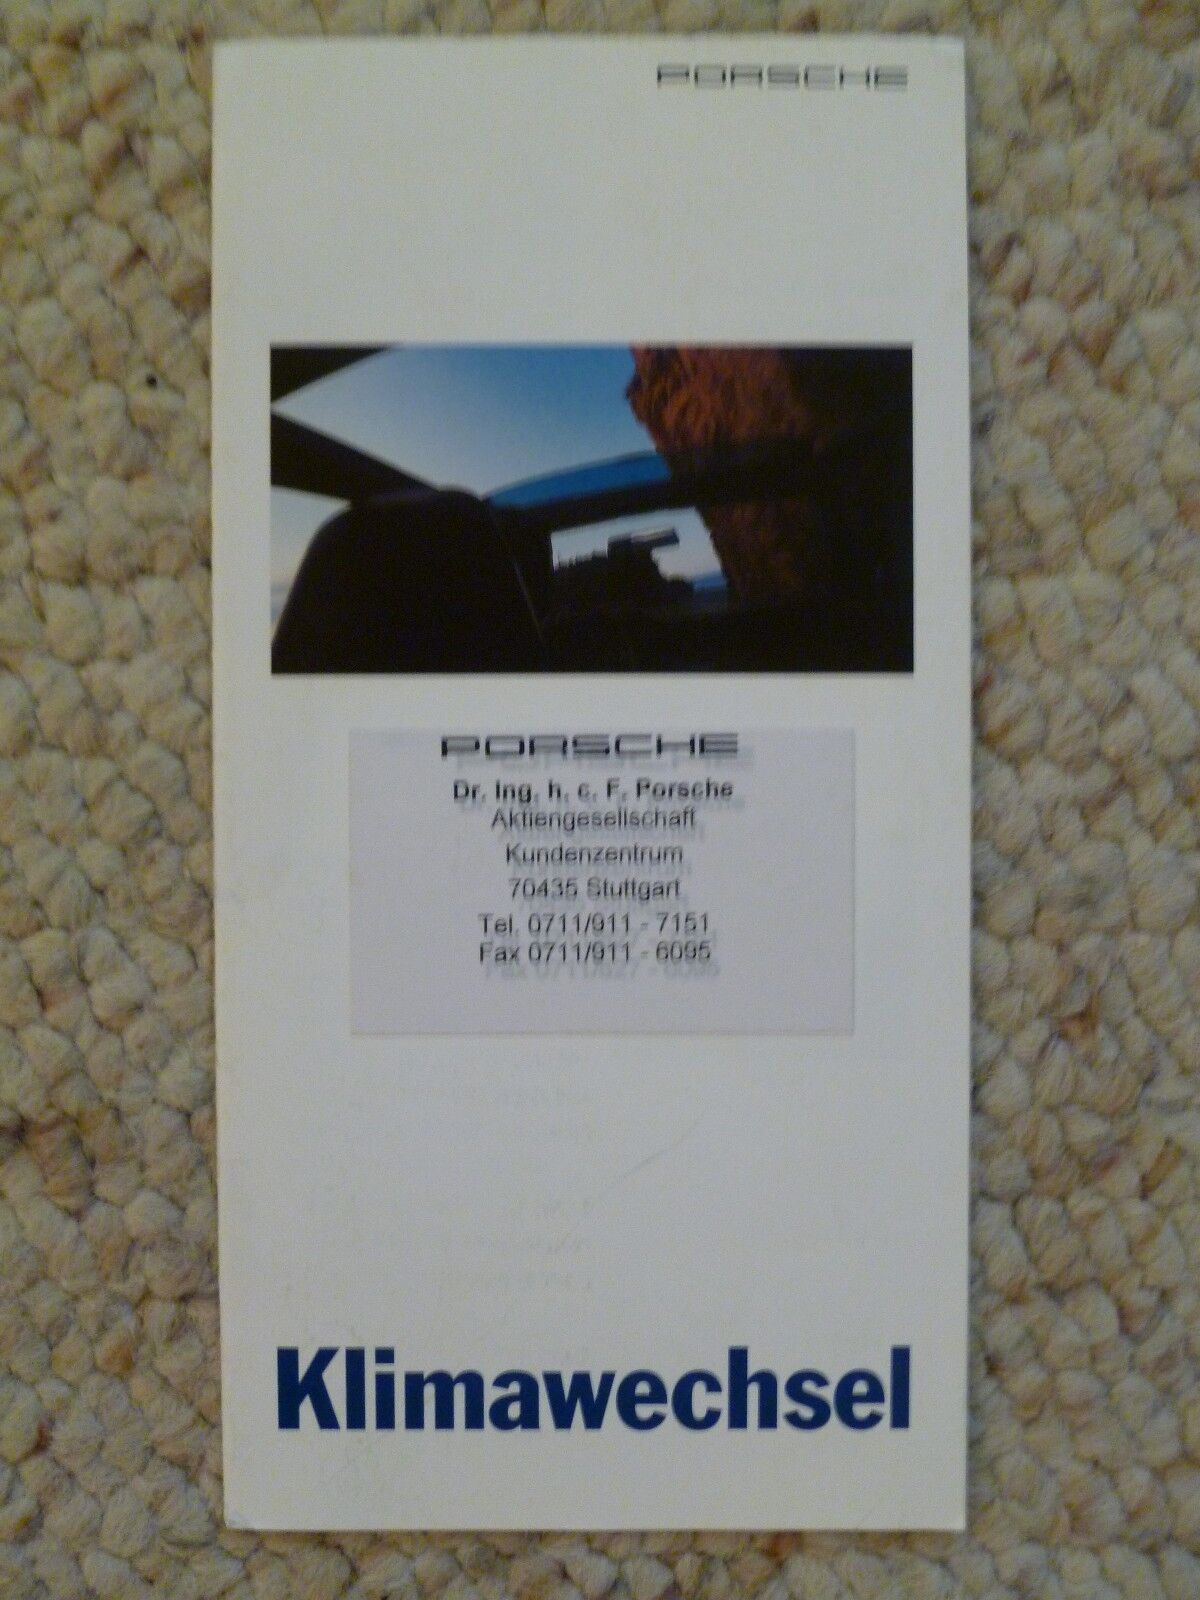 1996 Porsche Klimawechsel (Climate Control) Showroom Folder / Brochure RARE L@@K